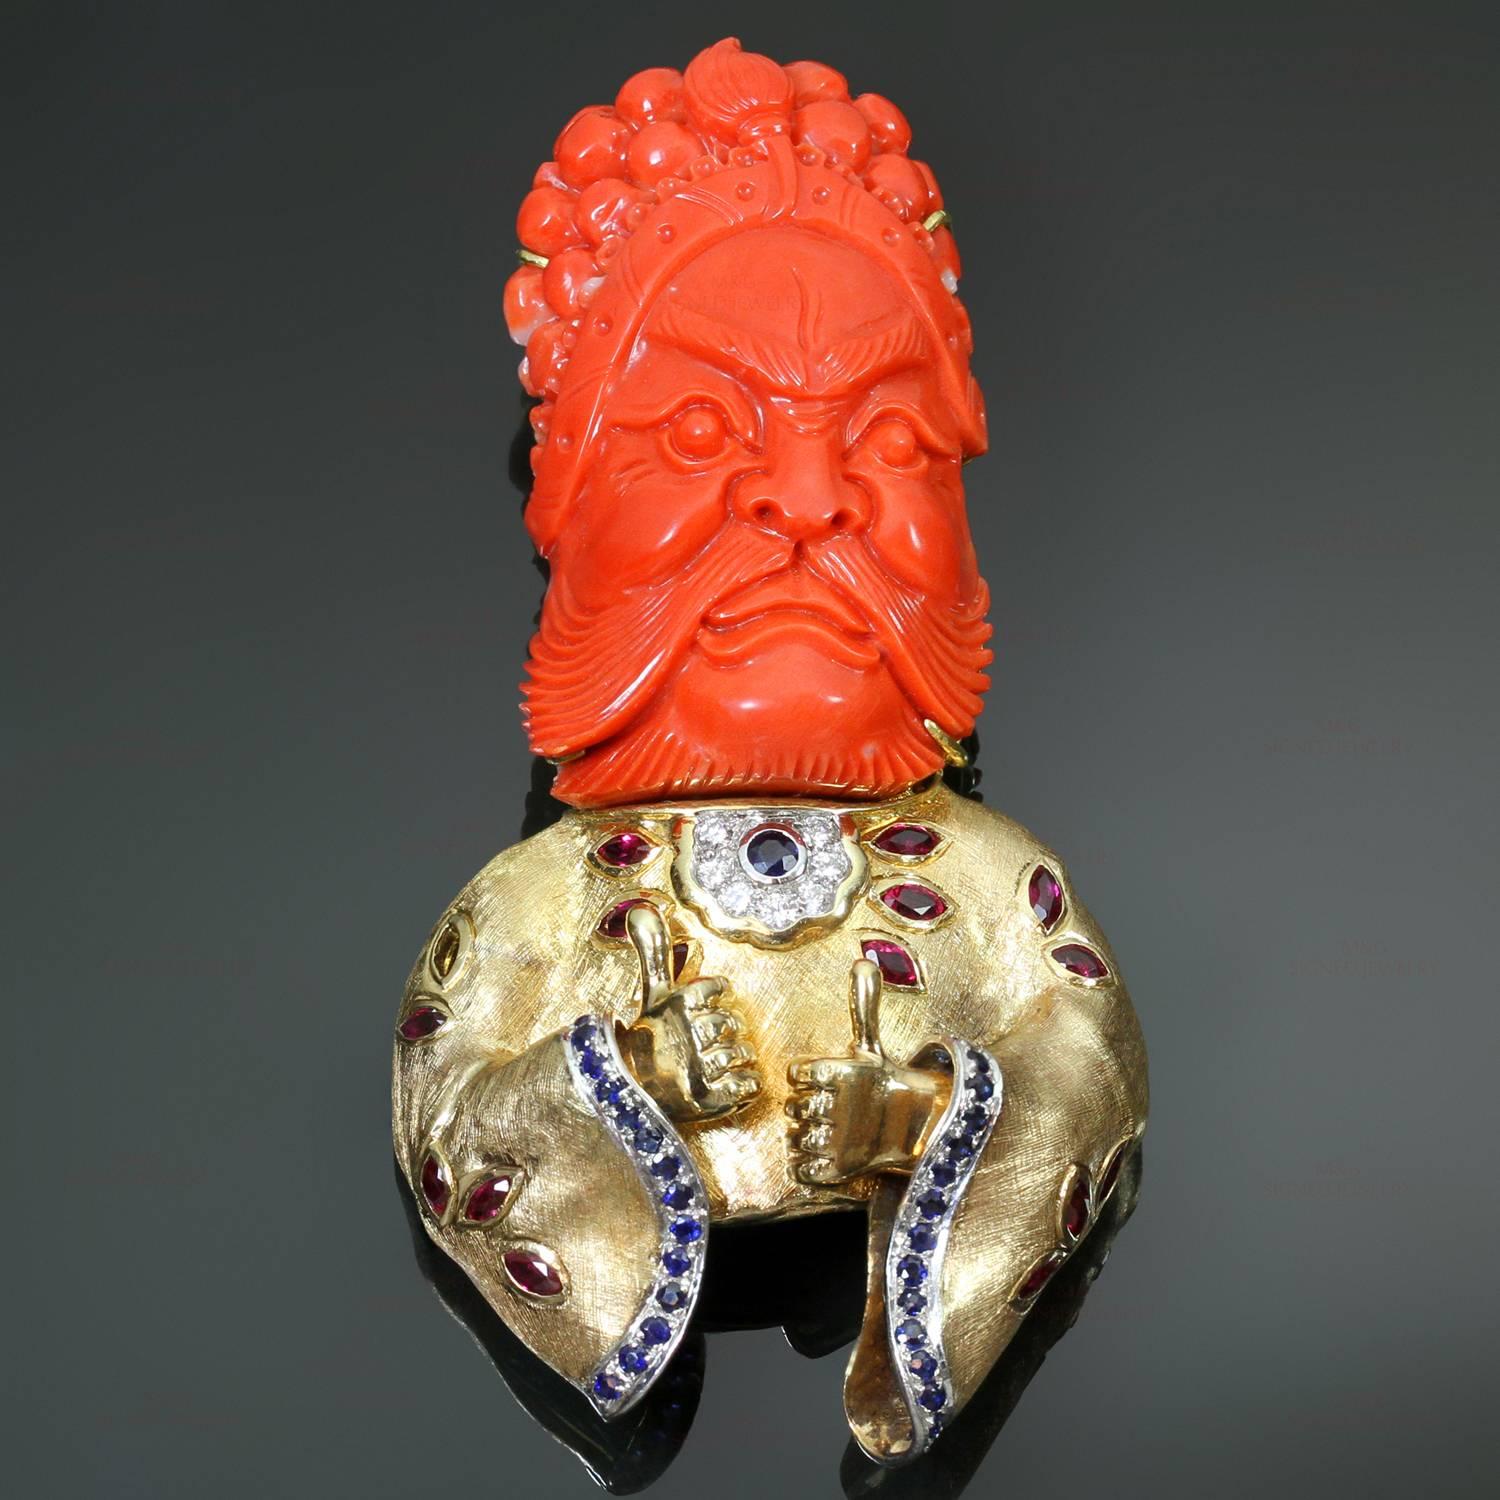 Diese seltene, handgefertigte Brosche zeigt eine Kamee aus roter Koralle, die einen Lu, den chinesischen Gott des Reichtums, darstellt. Die Brosche ist aus 18 Karat Gelbgold gefertigt und  akzentuiert mit Rubinen im Marquiseschliff mit einem